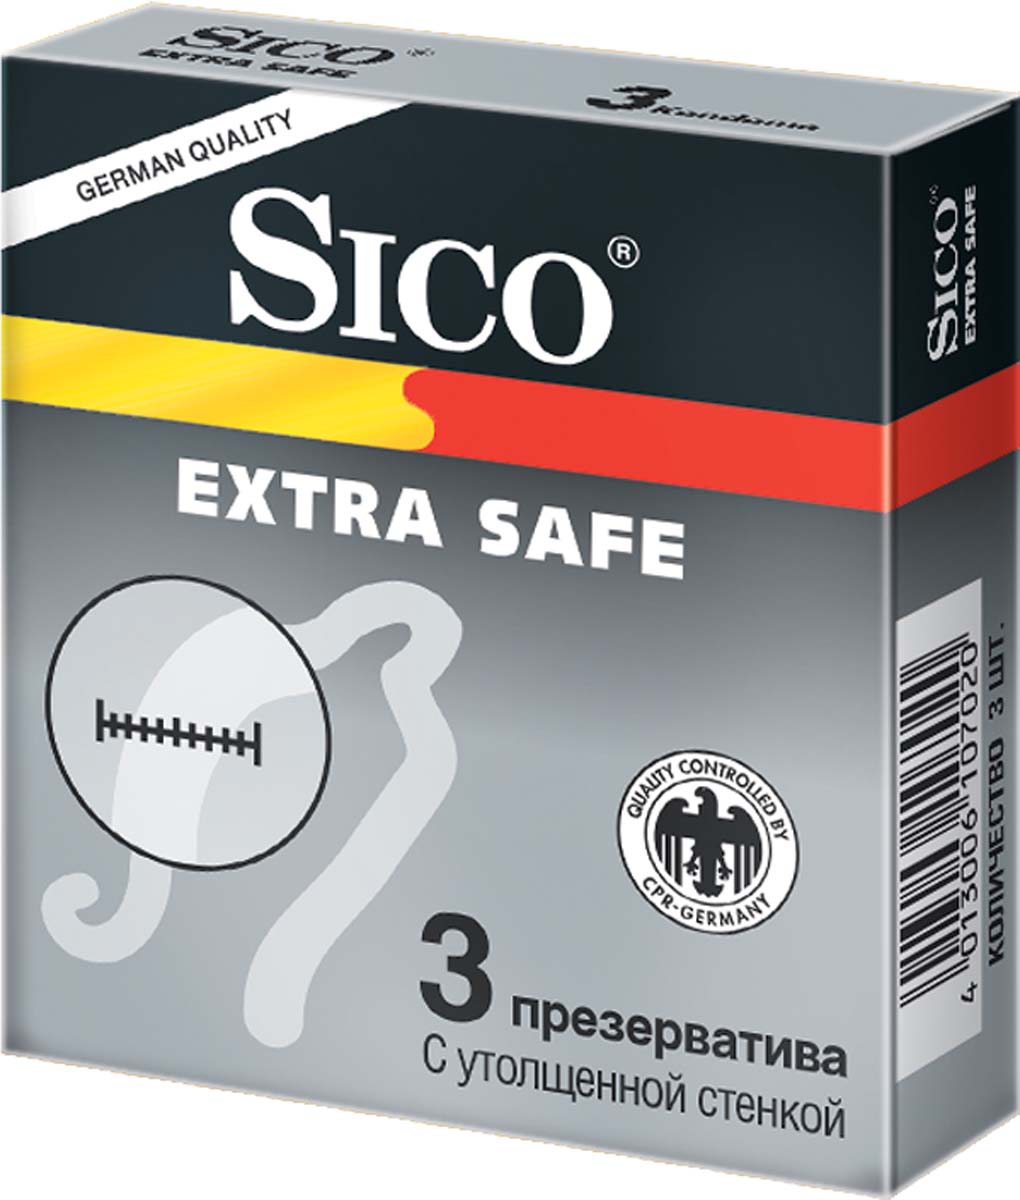 SICO Презервативы Extra Safe, с утолщенной стенкой, 3 шт